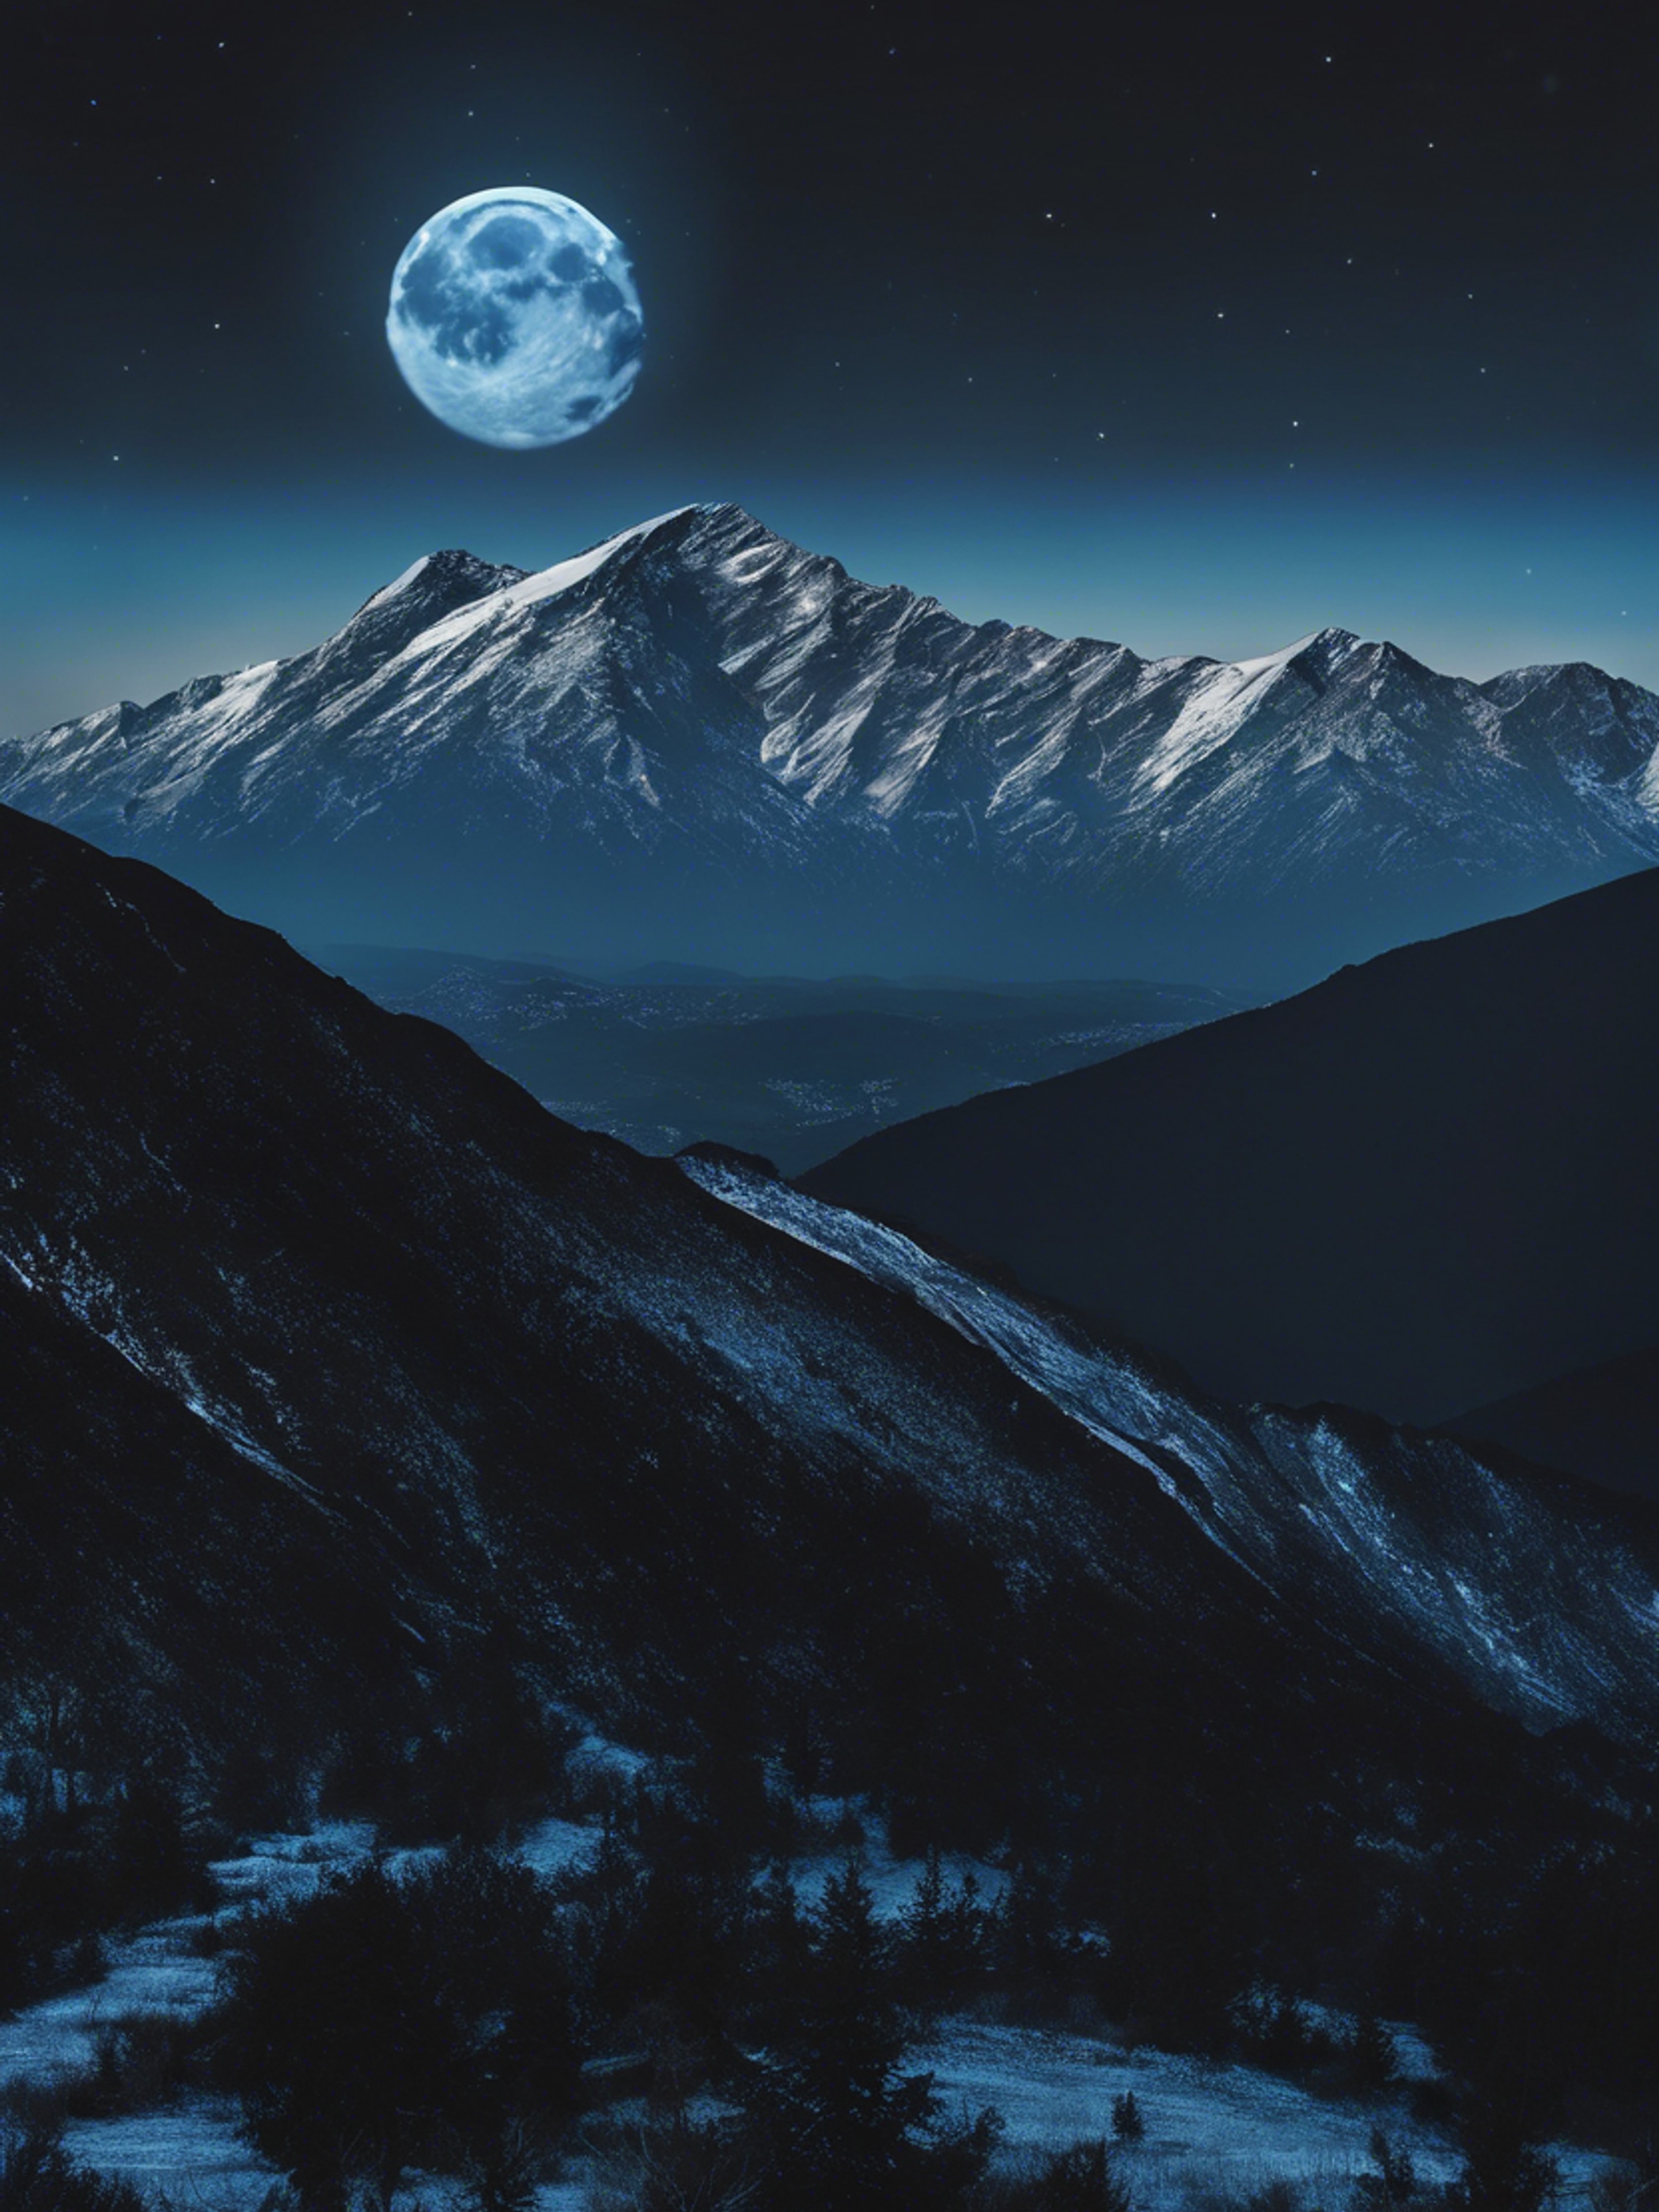 A calm blue moon illuminating the black silhouette of a serene mountain range. Wallpaper[e9e6a71abde94eeebdbf]